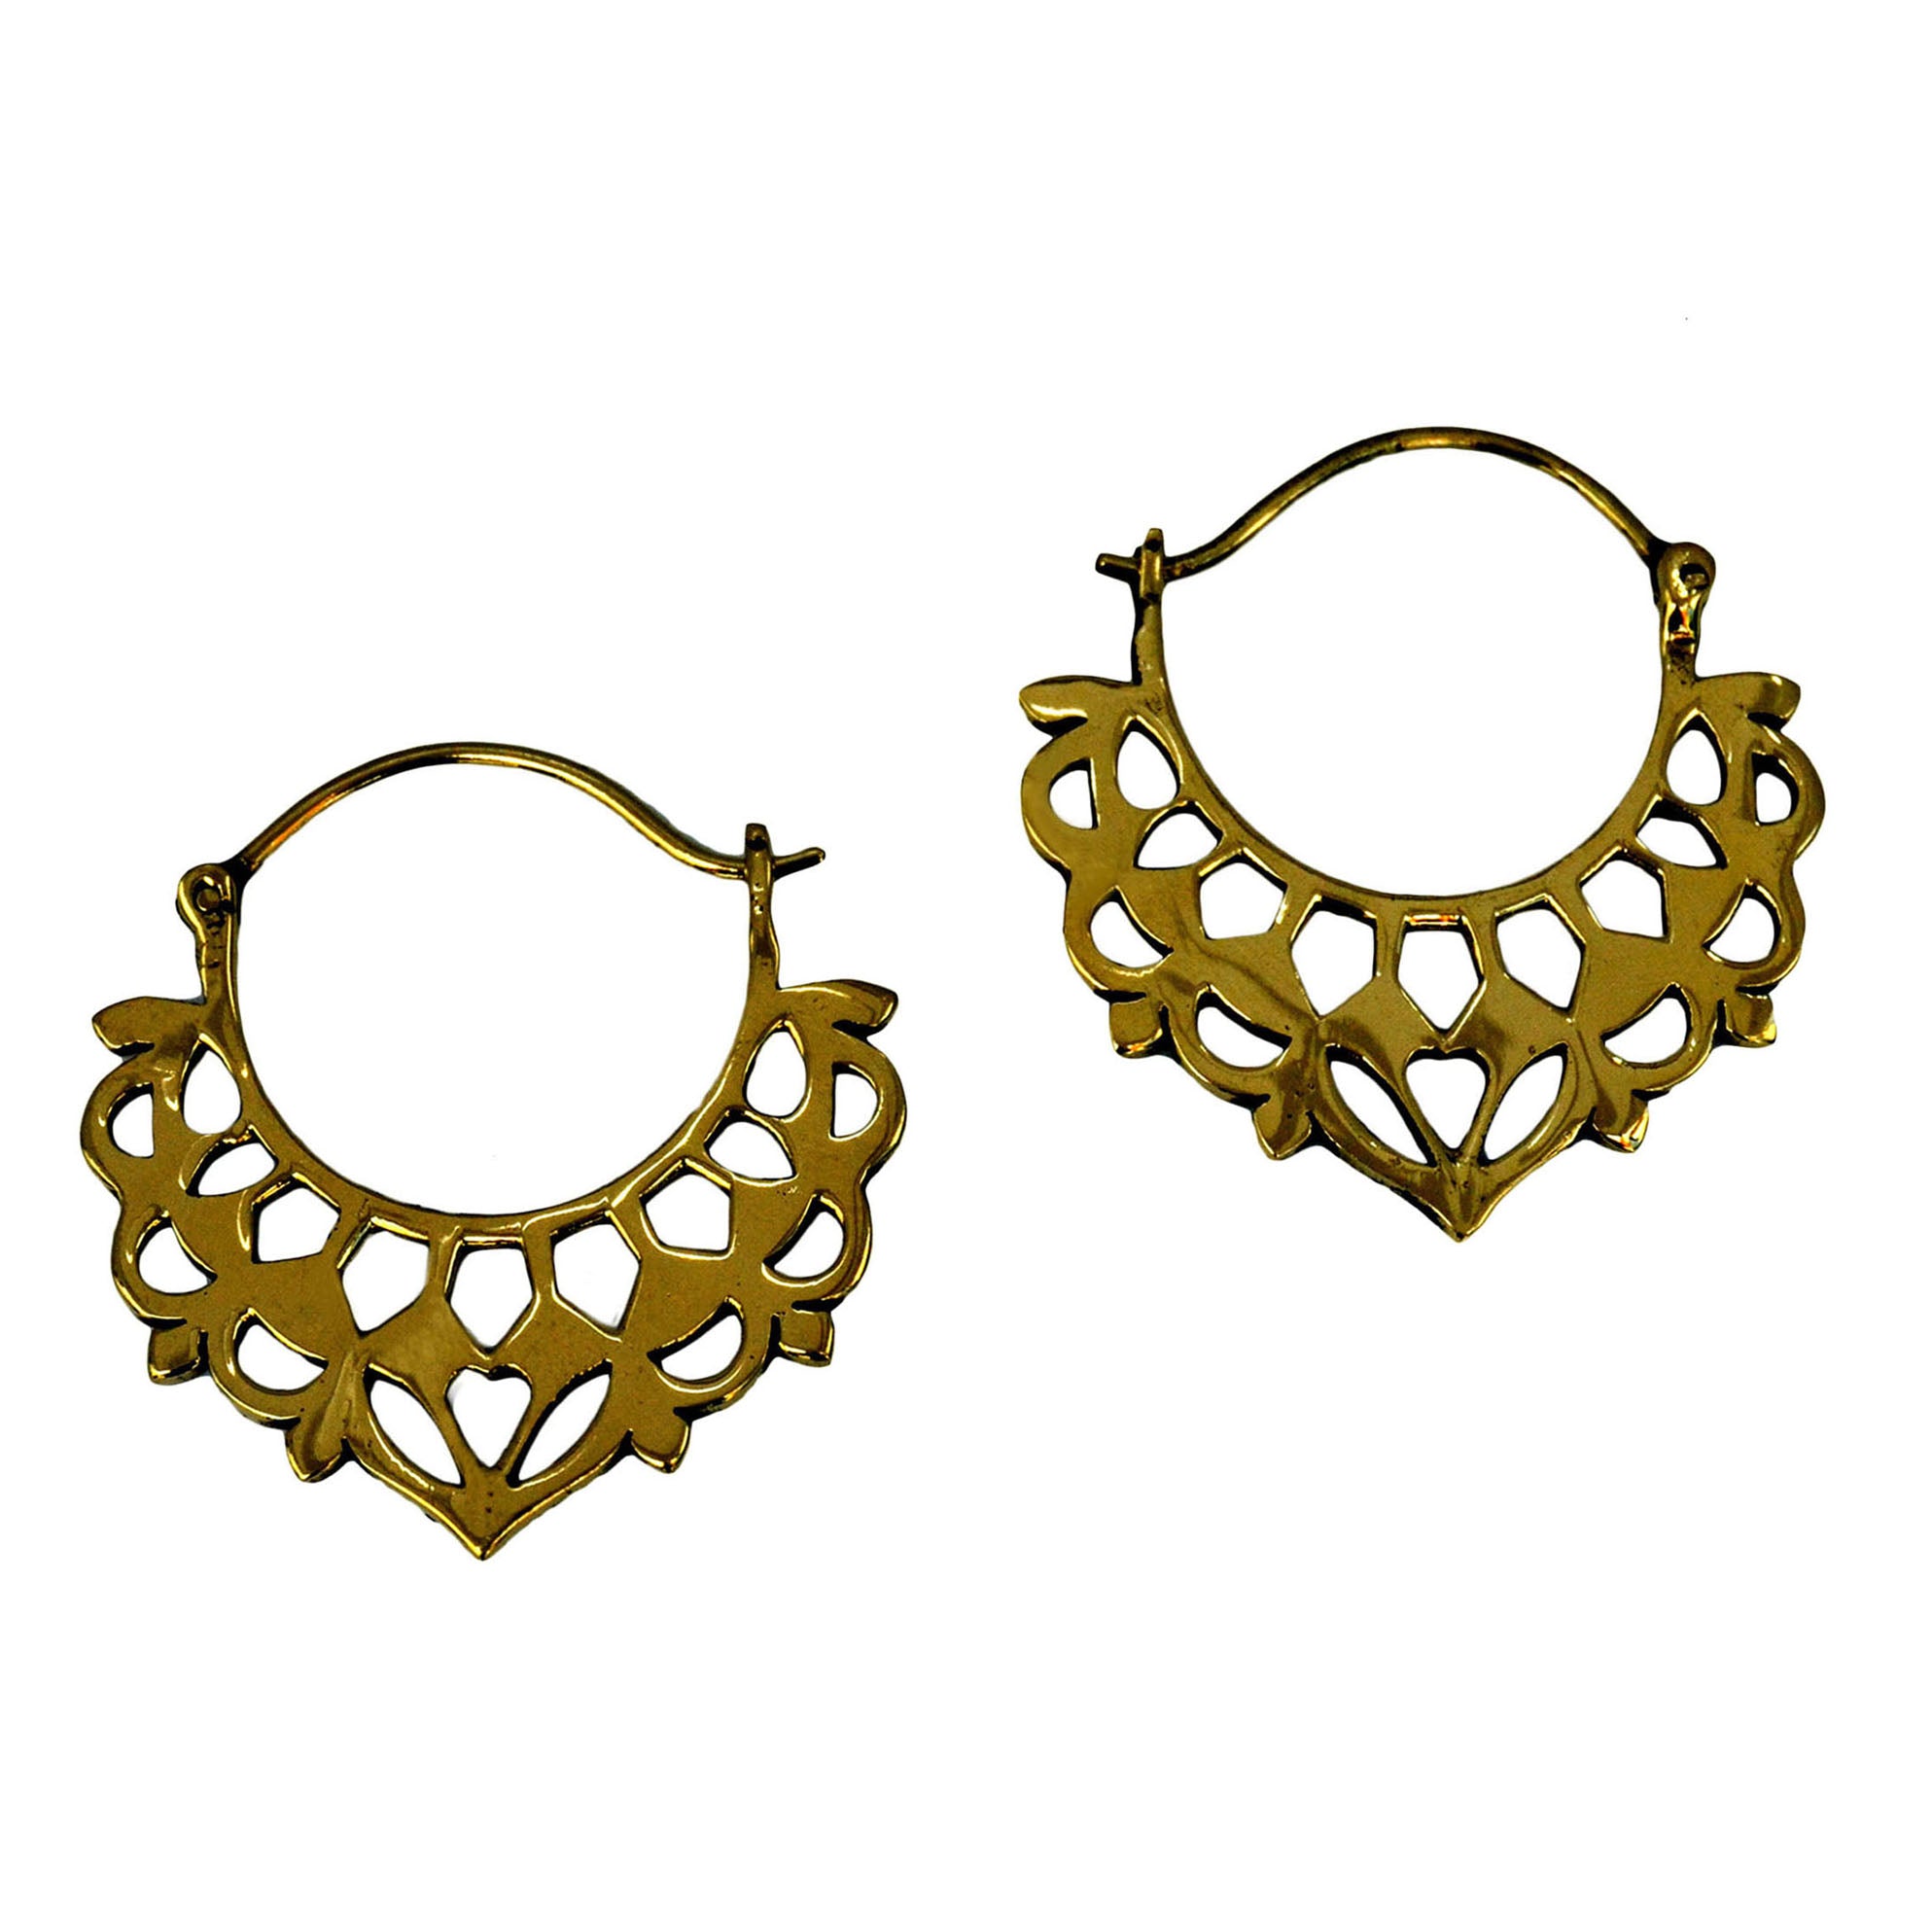 Balinese hoop earrings in gold color